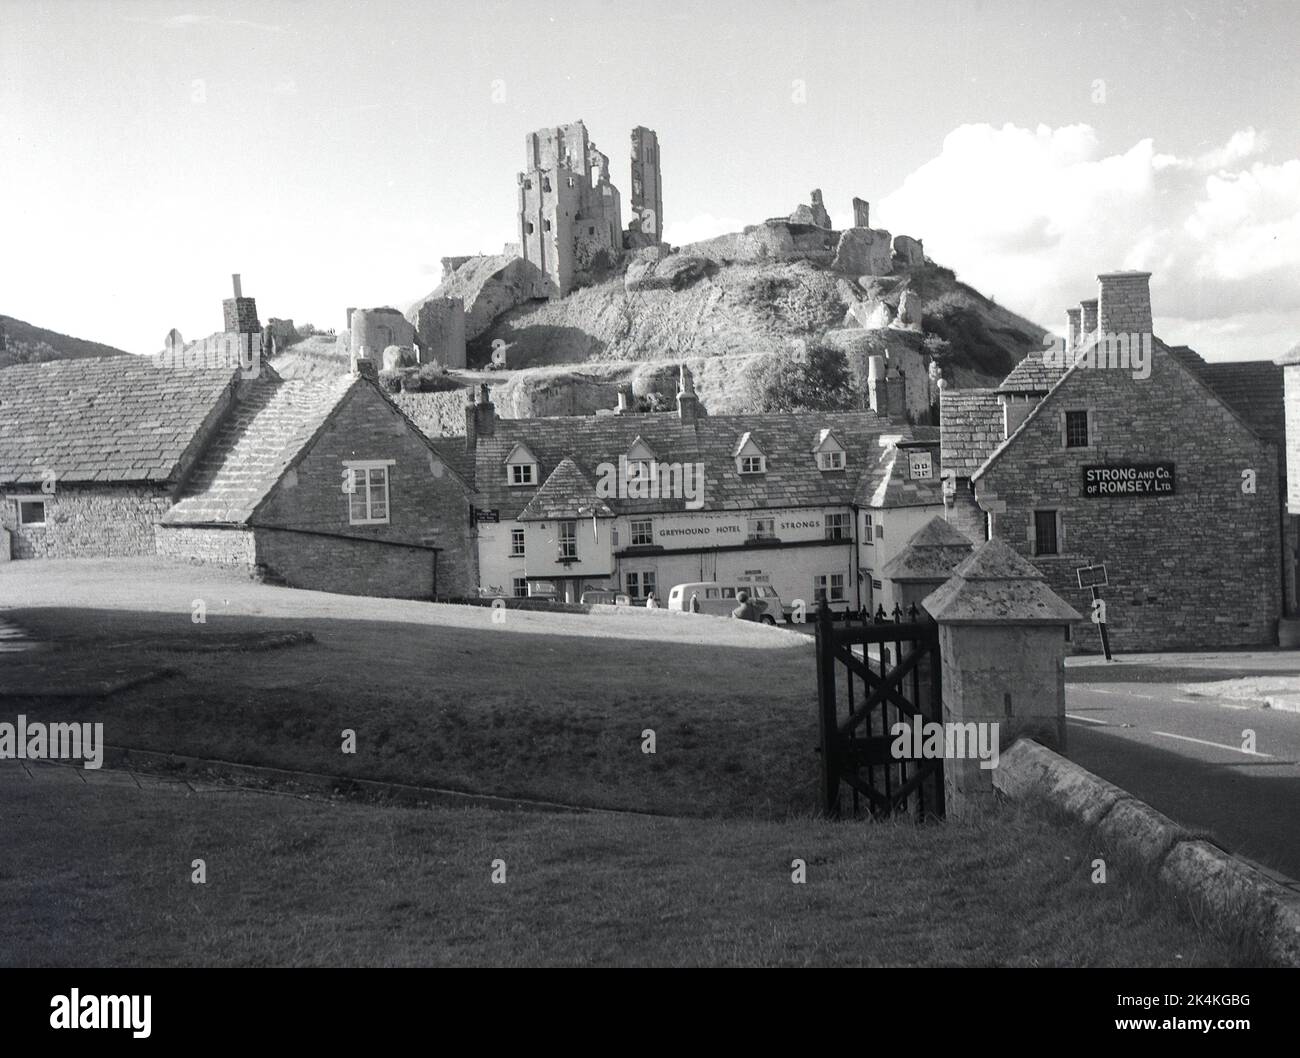 1964, storico, il villaggio di Corfe Caste e una vista del Greyhound Hotel, con le rovine del castello di Corfe in cima alla collina, Dorset, Inghilterra, Regno Unito. Firma per strong and Co of Romsey Ltd sulla parete dell'edificio. In seguito divenne un pub Whitebread. Risalente al 1580, il pub è una delle più antiche pensioni per carrozze d'Inghilterra. Originariamente costruito da Guglielmo il Conquistatore, il castello in cima alla collina era una delle prime fortificazioni costruite in parte in pietra, ma nel 1645 fu leggermente distrutto, cioè parzialmente distrutto, dopo la guerra civile inglese, per evitare che fosse utilizzato come una potenziale fortezza e divenne una rovina. Foto Stock